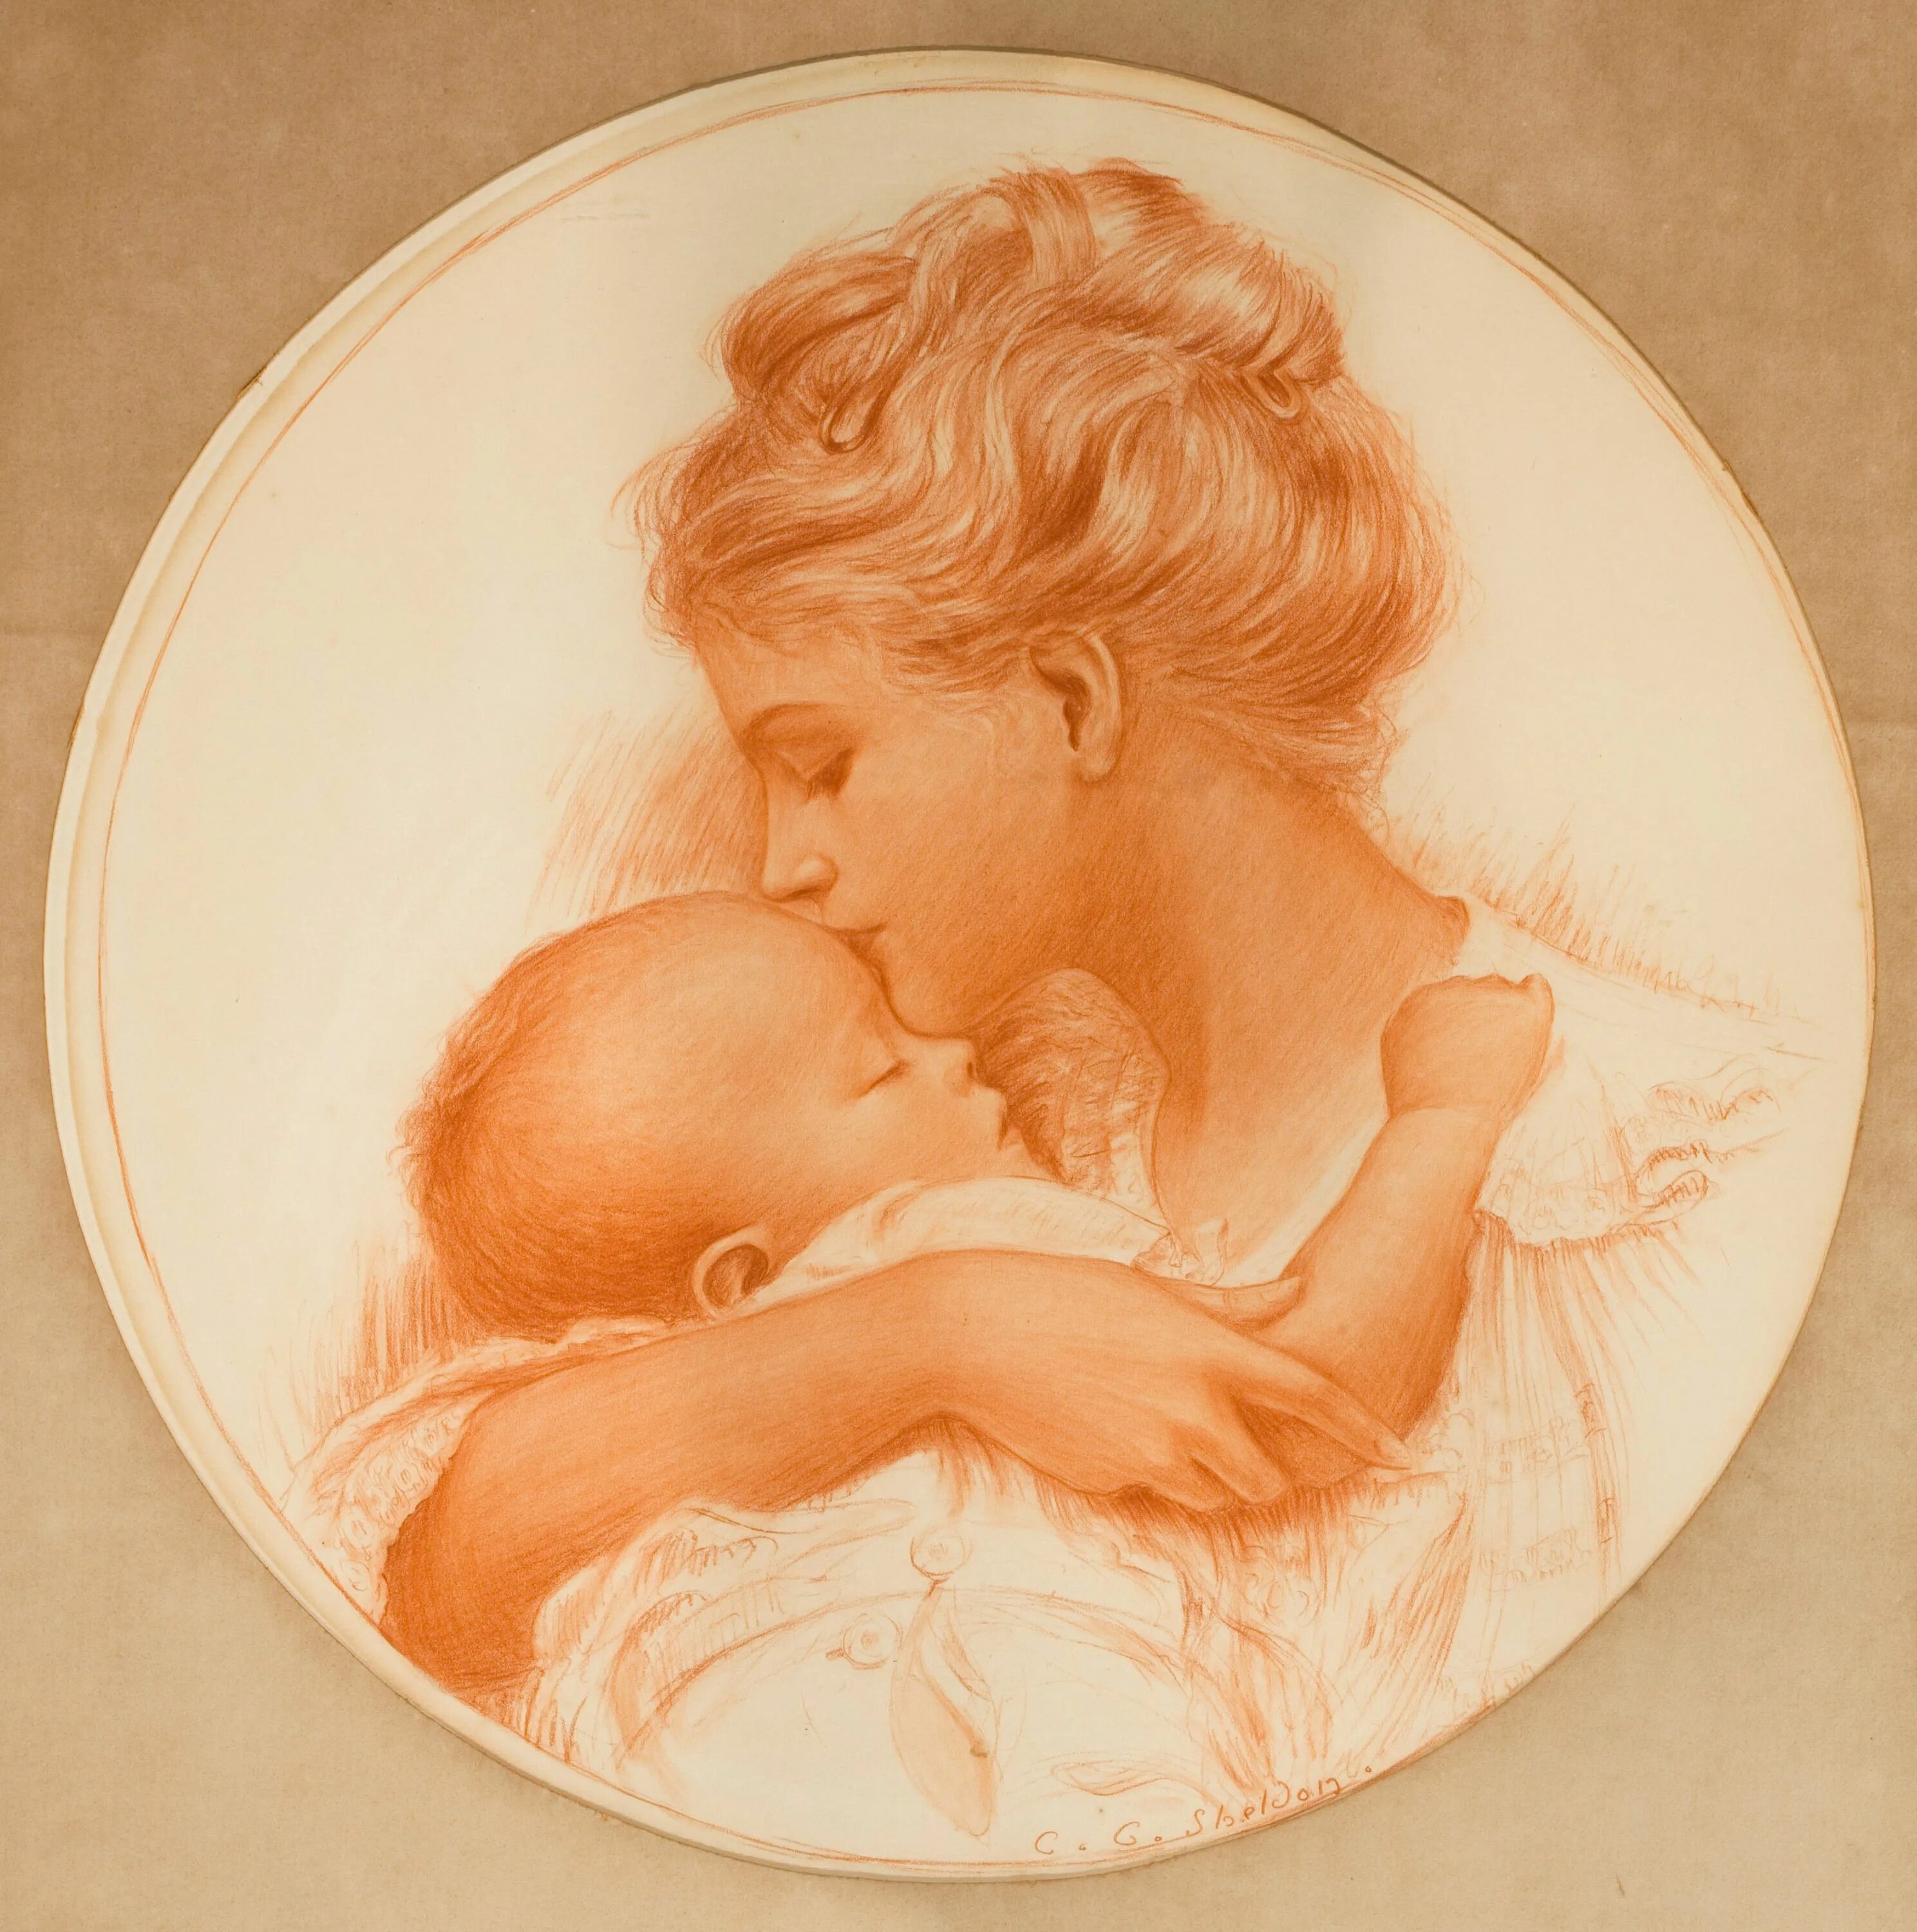 День матери малыши. "Мать и дитя", Жук, 1906. Мать и дитя. Образ матери и дитя. Картина женщина с ребенком на руках.